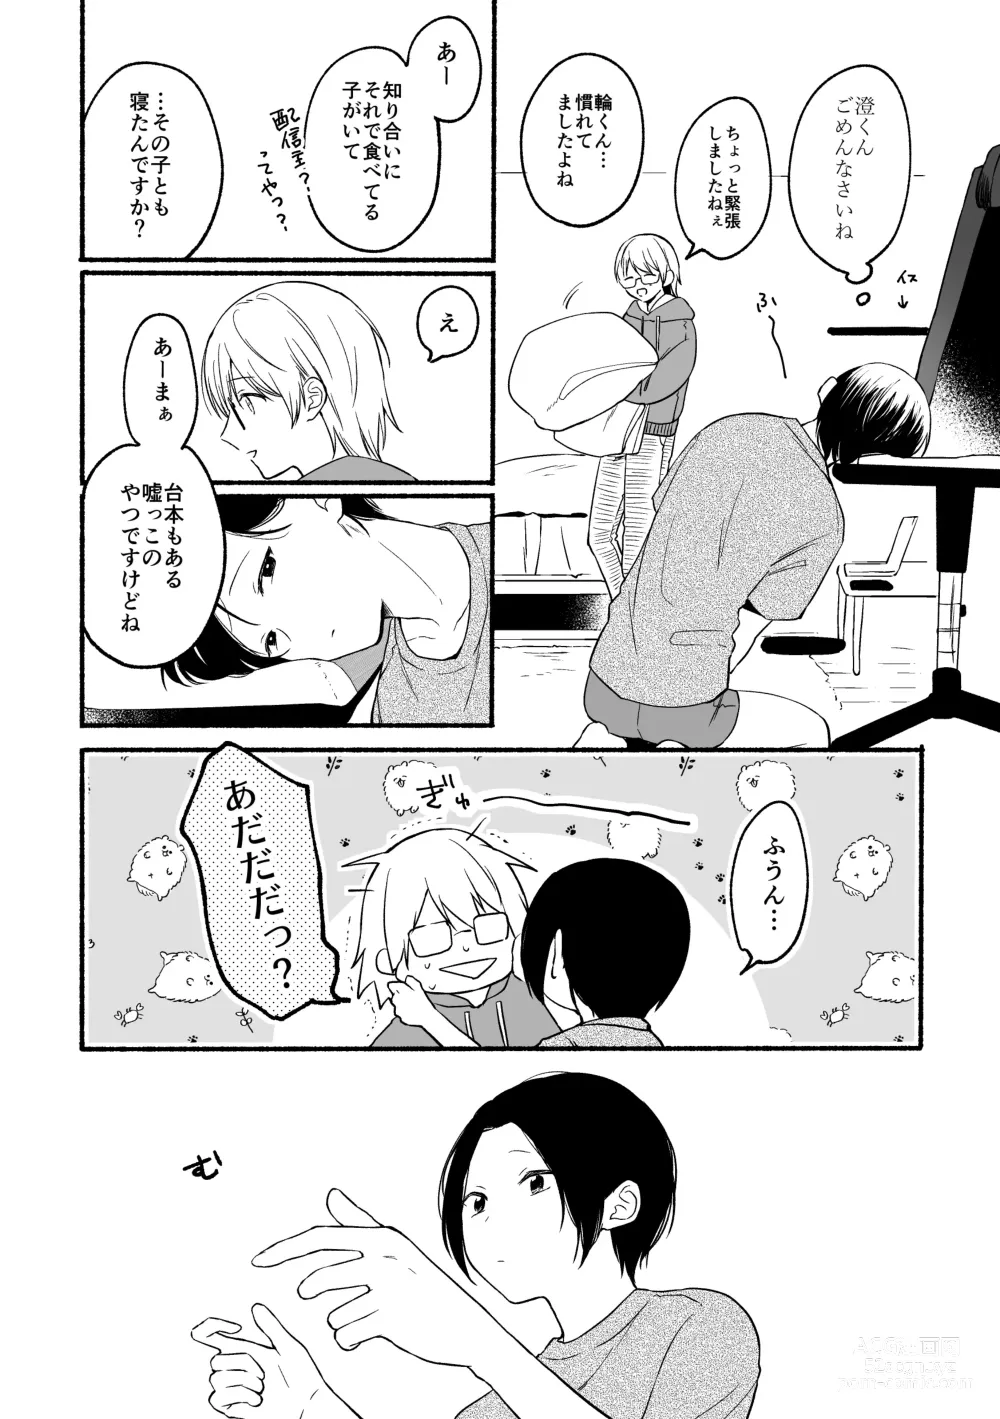 Page 25 of doujinshi Seijinkou Mangakka, Hamedori Haishin Ganbarimasu.